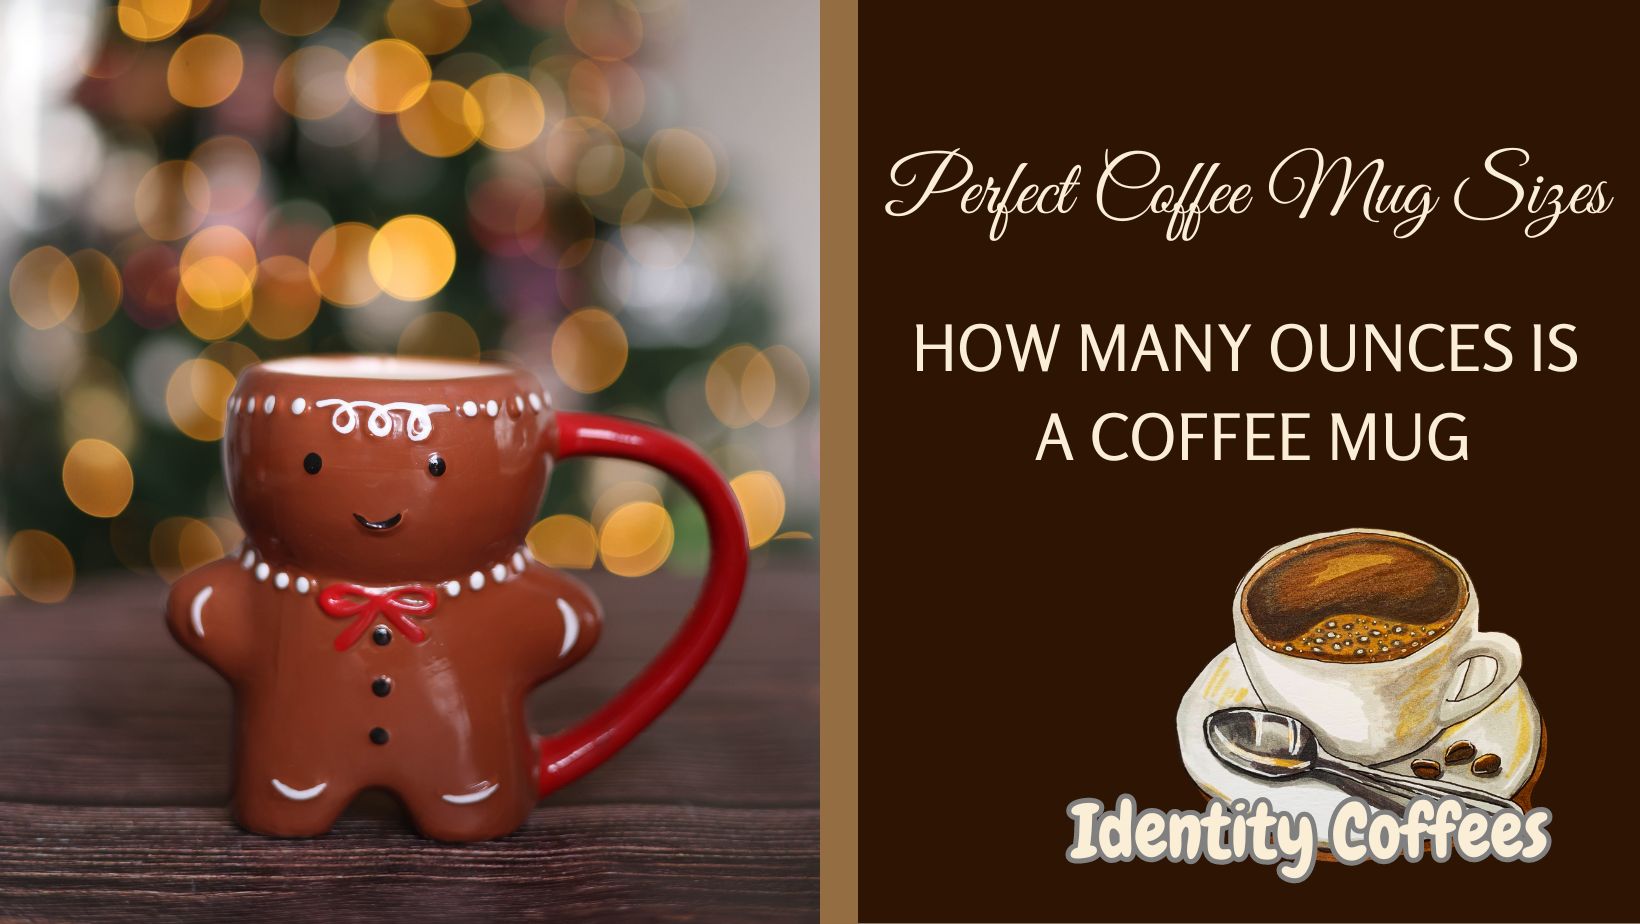 Perfect Coffee Mug Sizes – How Many Ounces Is A Coffee Mug